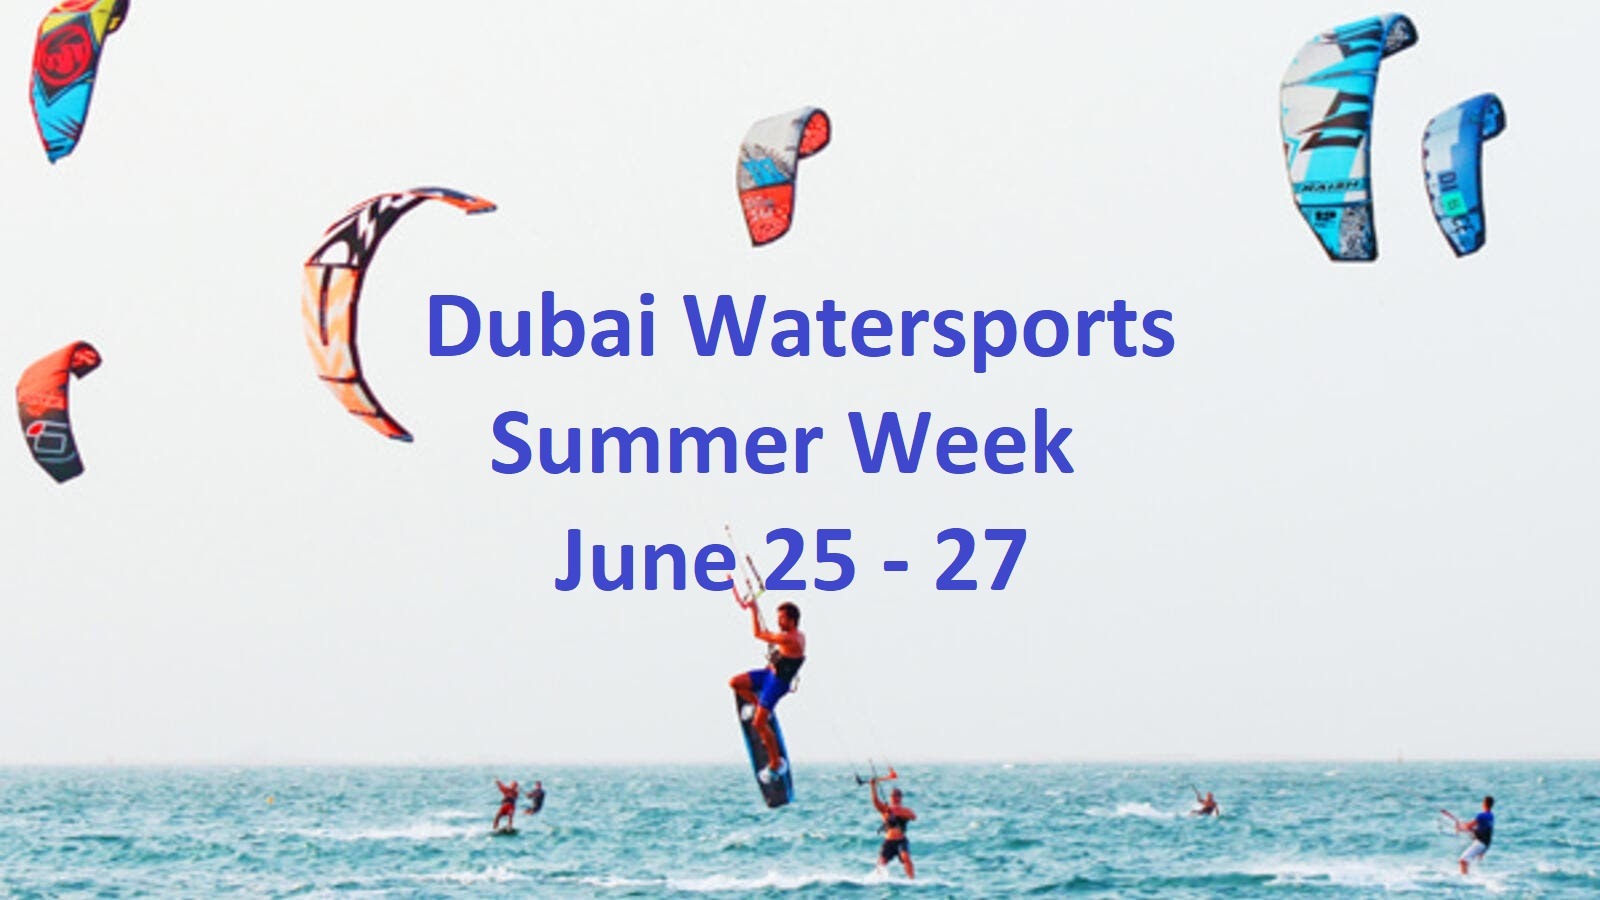 Dubai Watersports Summer Week - Coming Soon in UAE